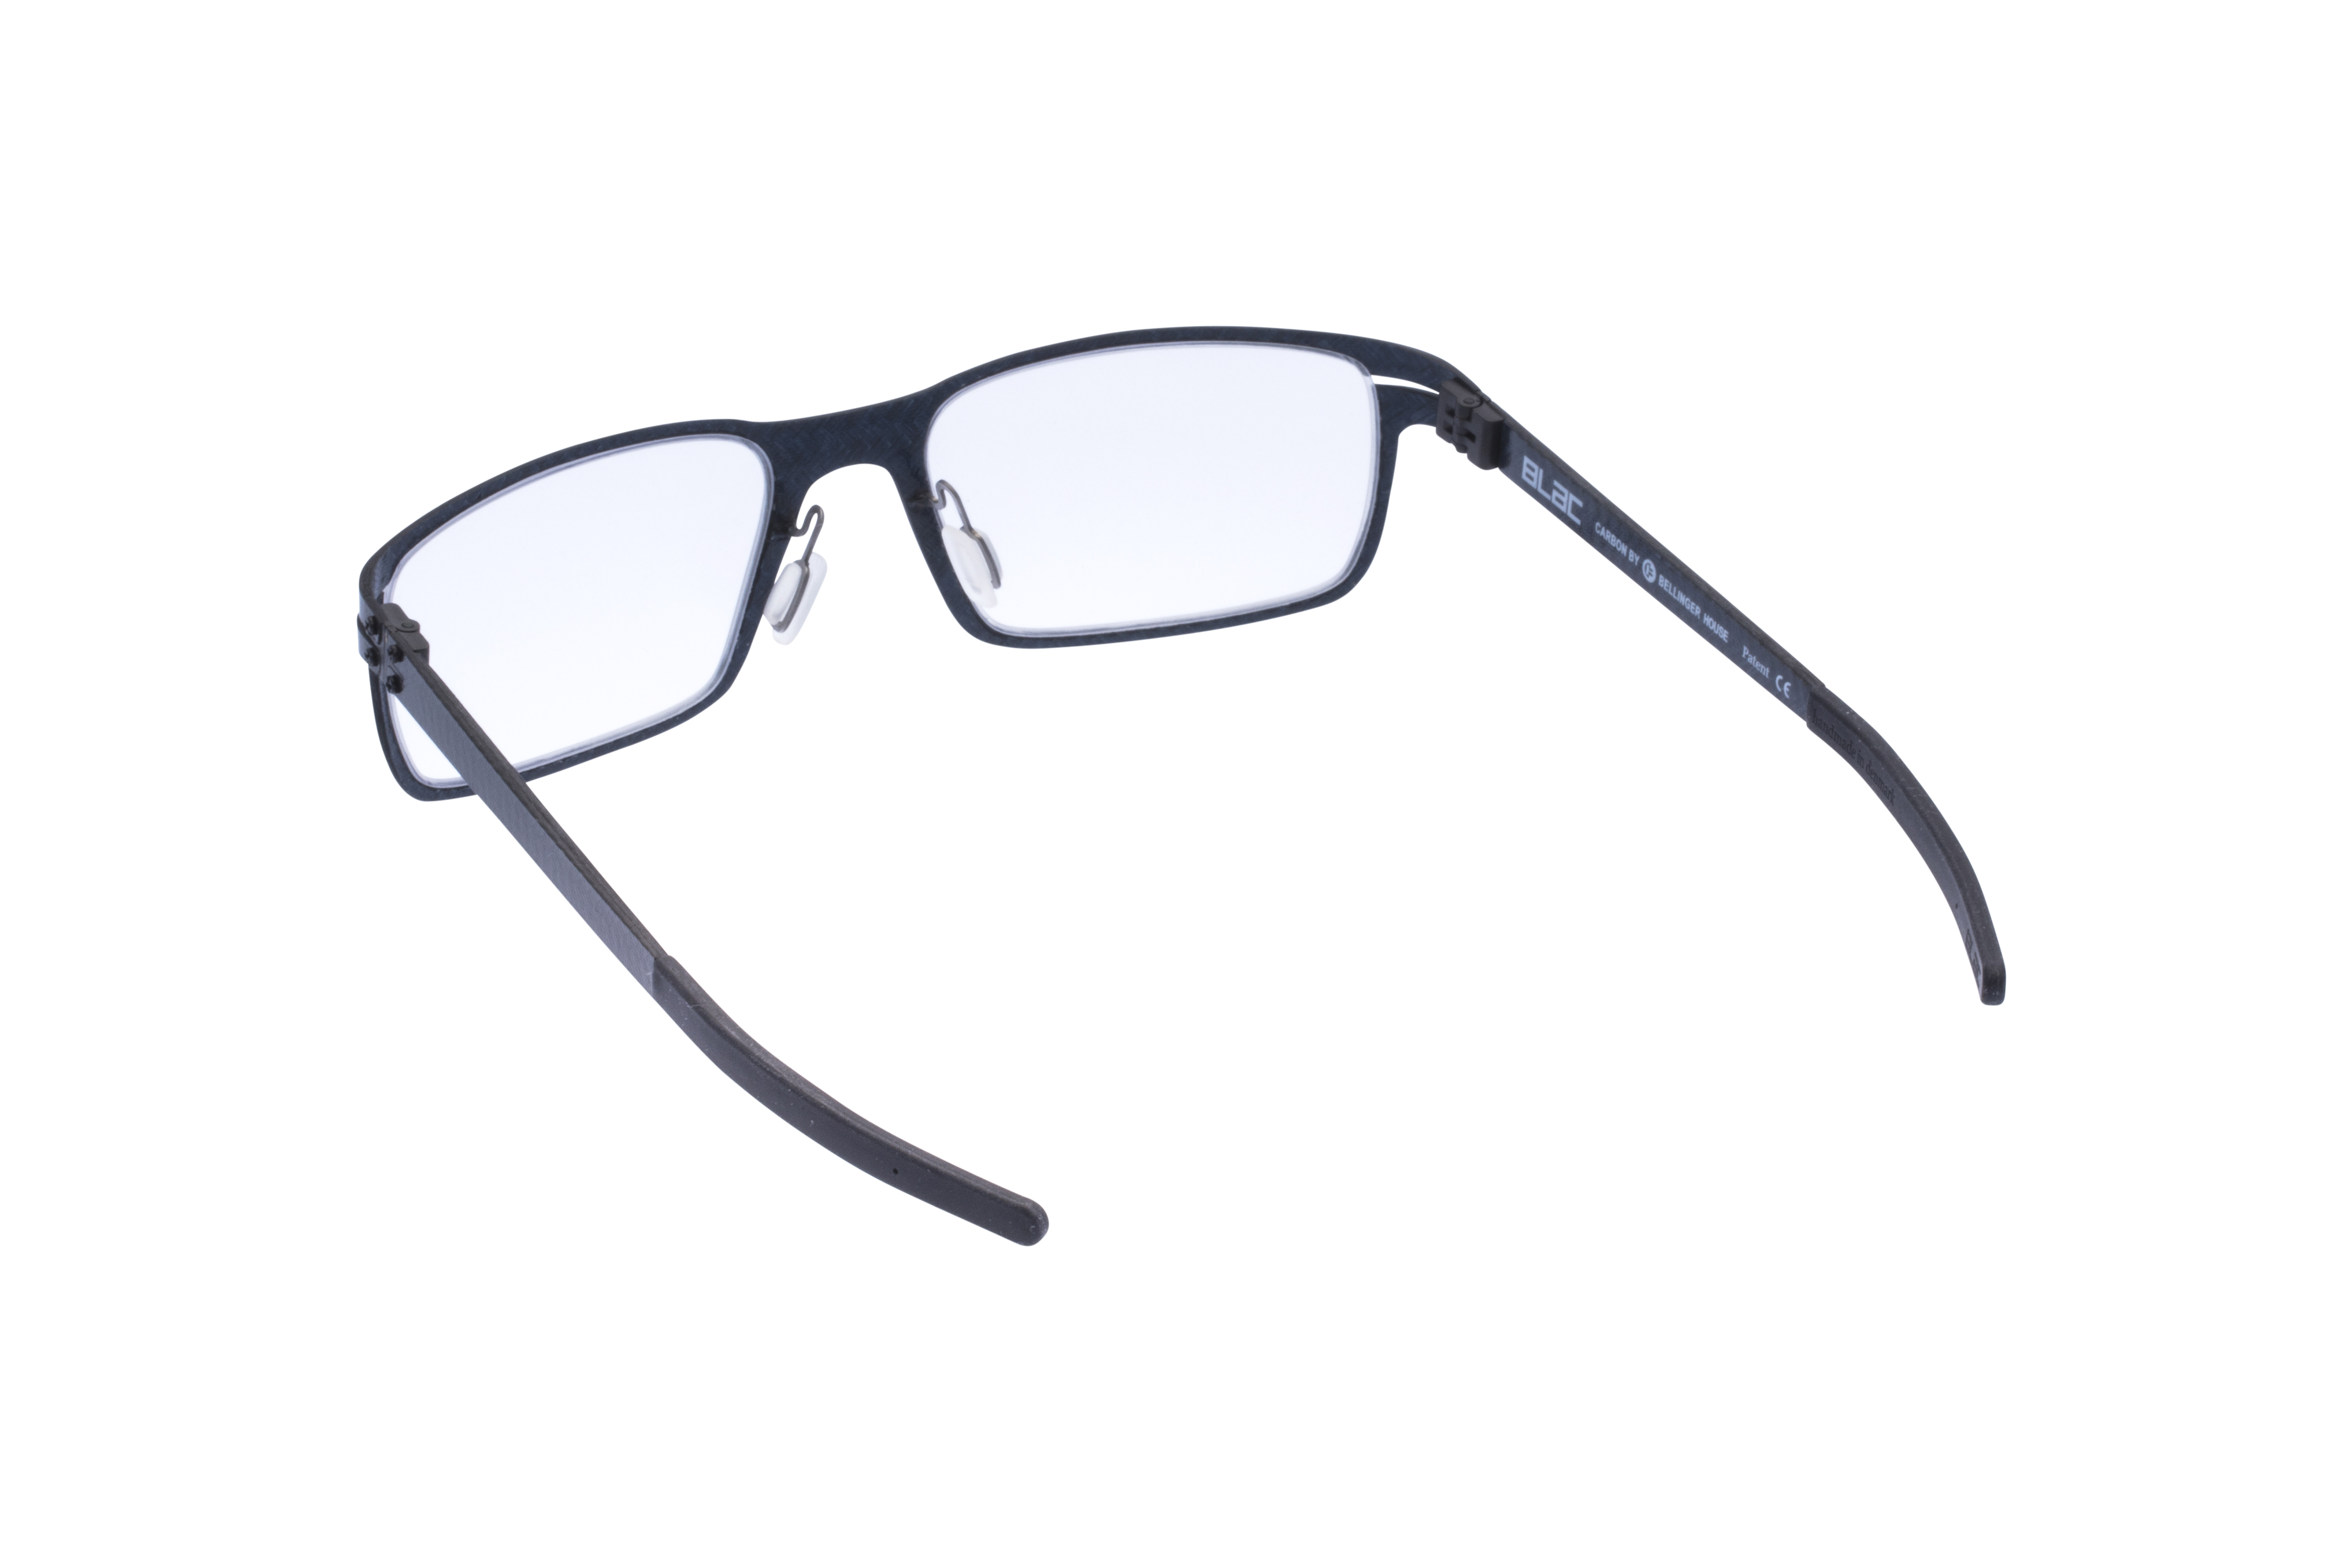 360 Grad Ansicht 14 Blac Dunes, Brille auf Weiß - Fassung bei KUNK